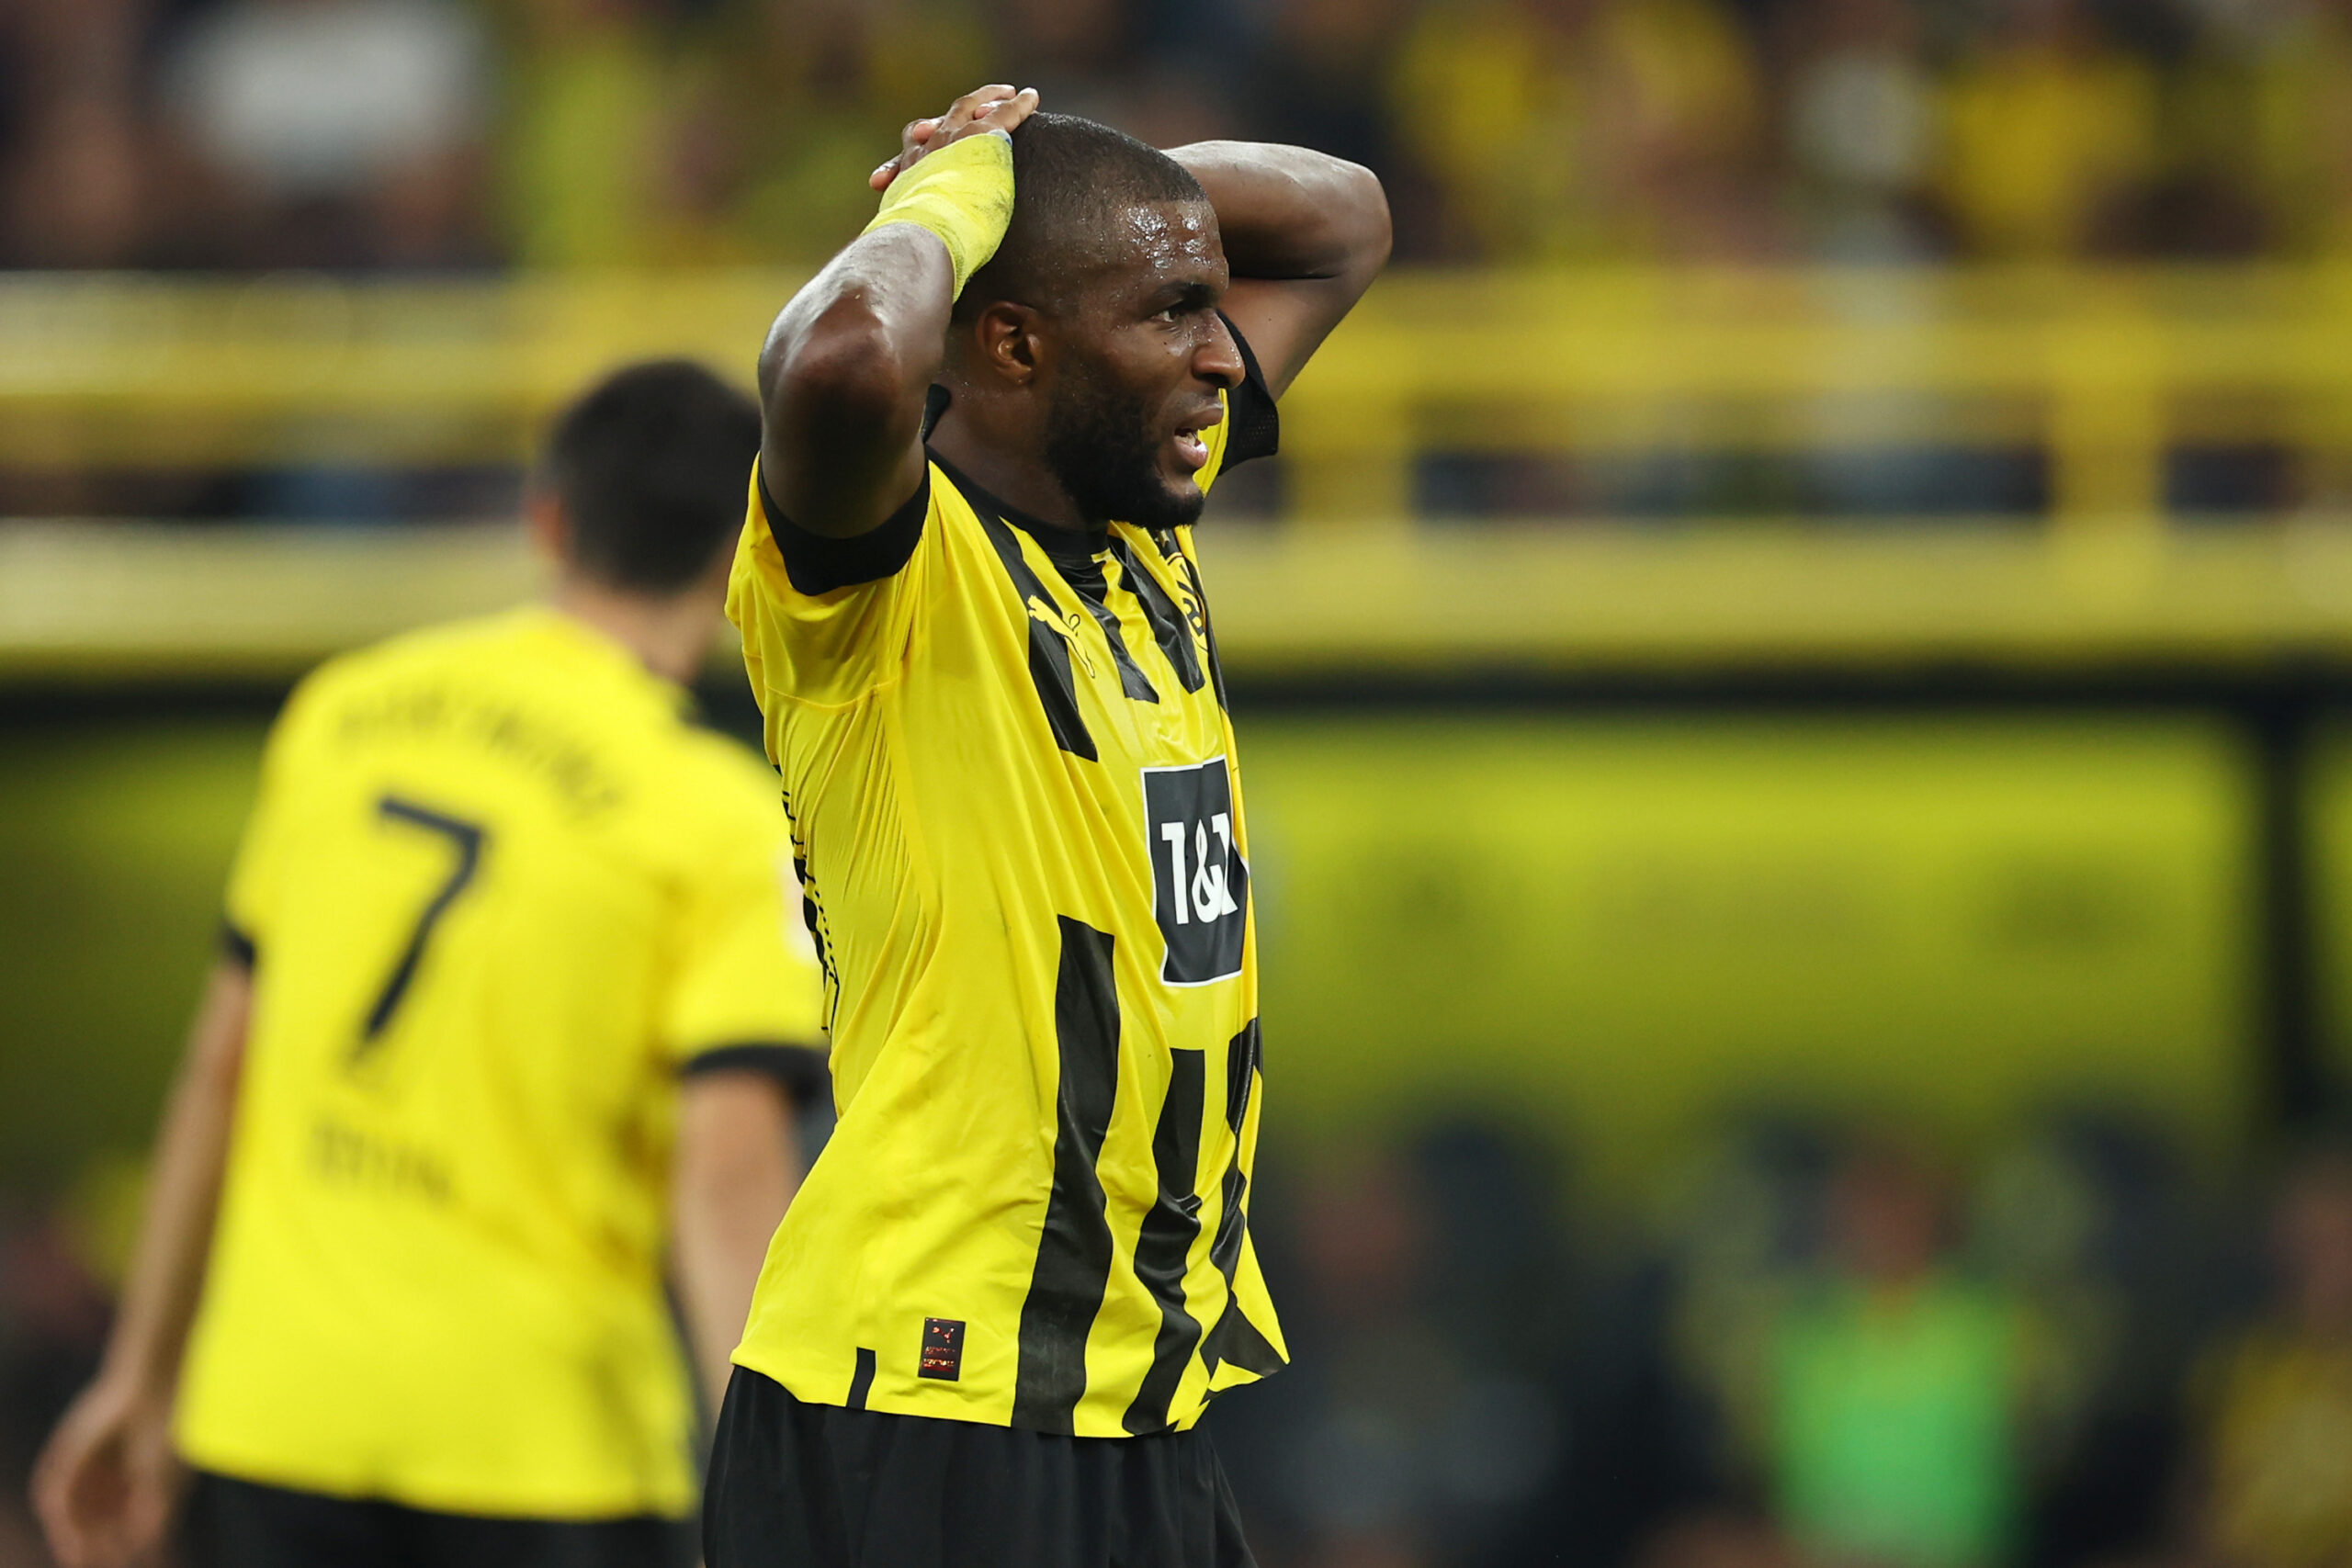 El ataque de Borussia Dortmund está rindiendo muy por debajo de lo que la estadística sugiere. Foto: Getty Images